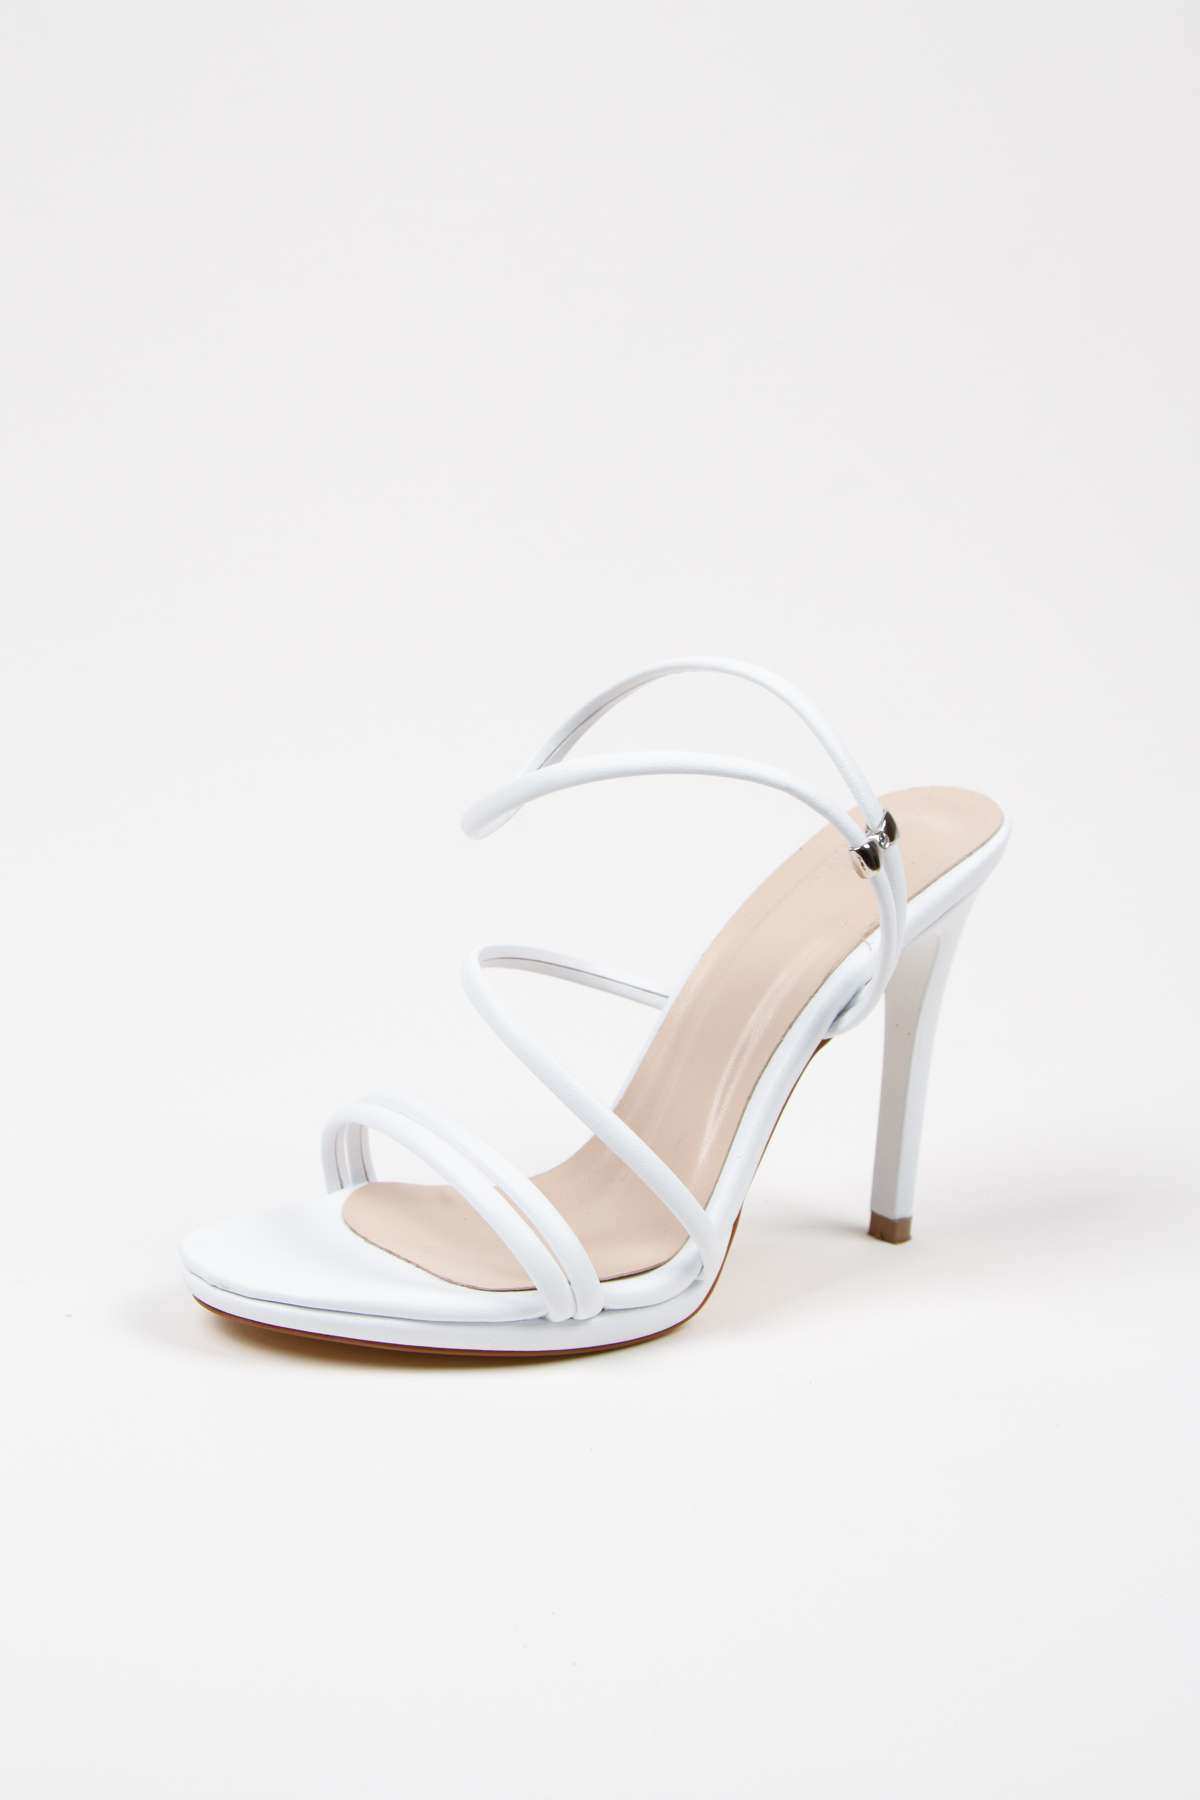 Kadın Yazlık 10 cm Beyaz İnce Topuklu Platformlu Ayakkabı